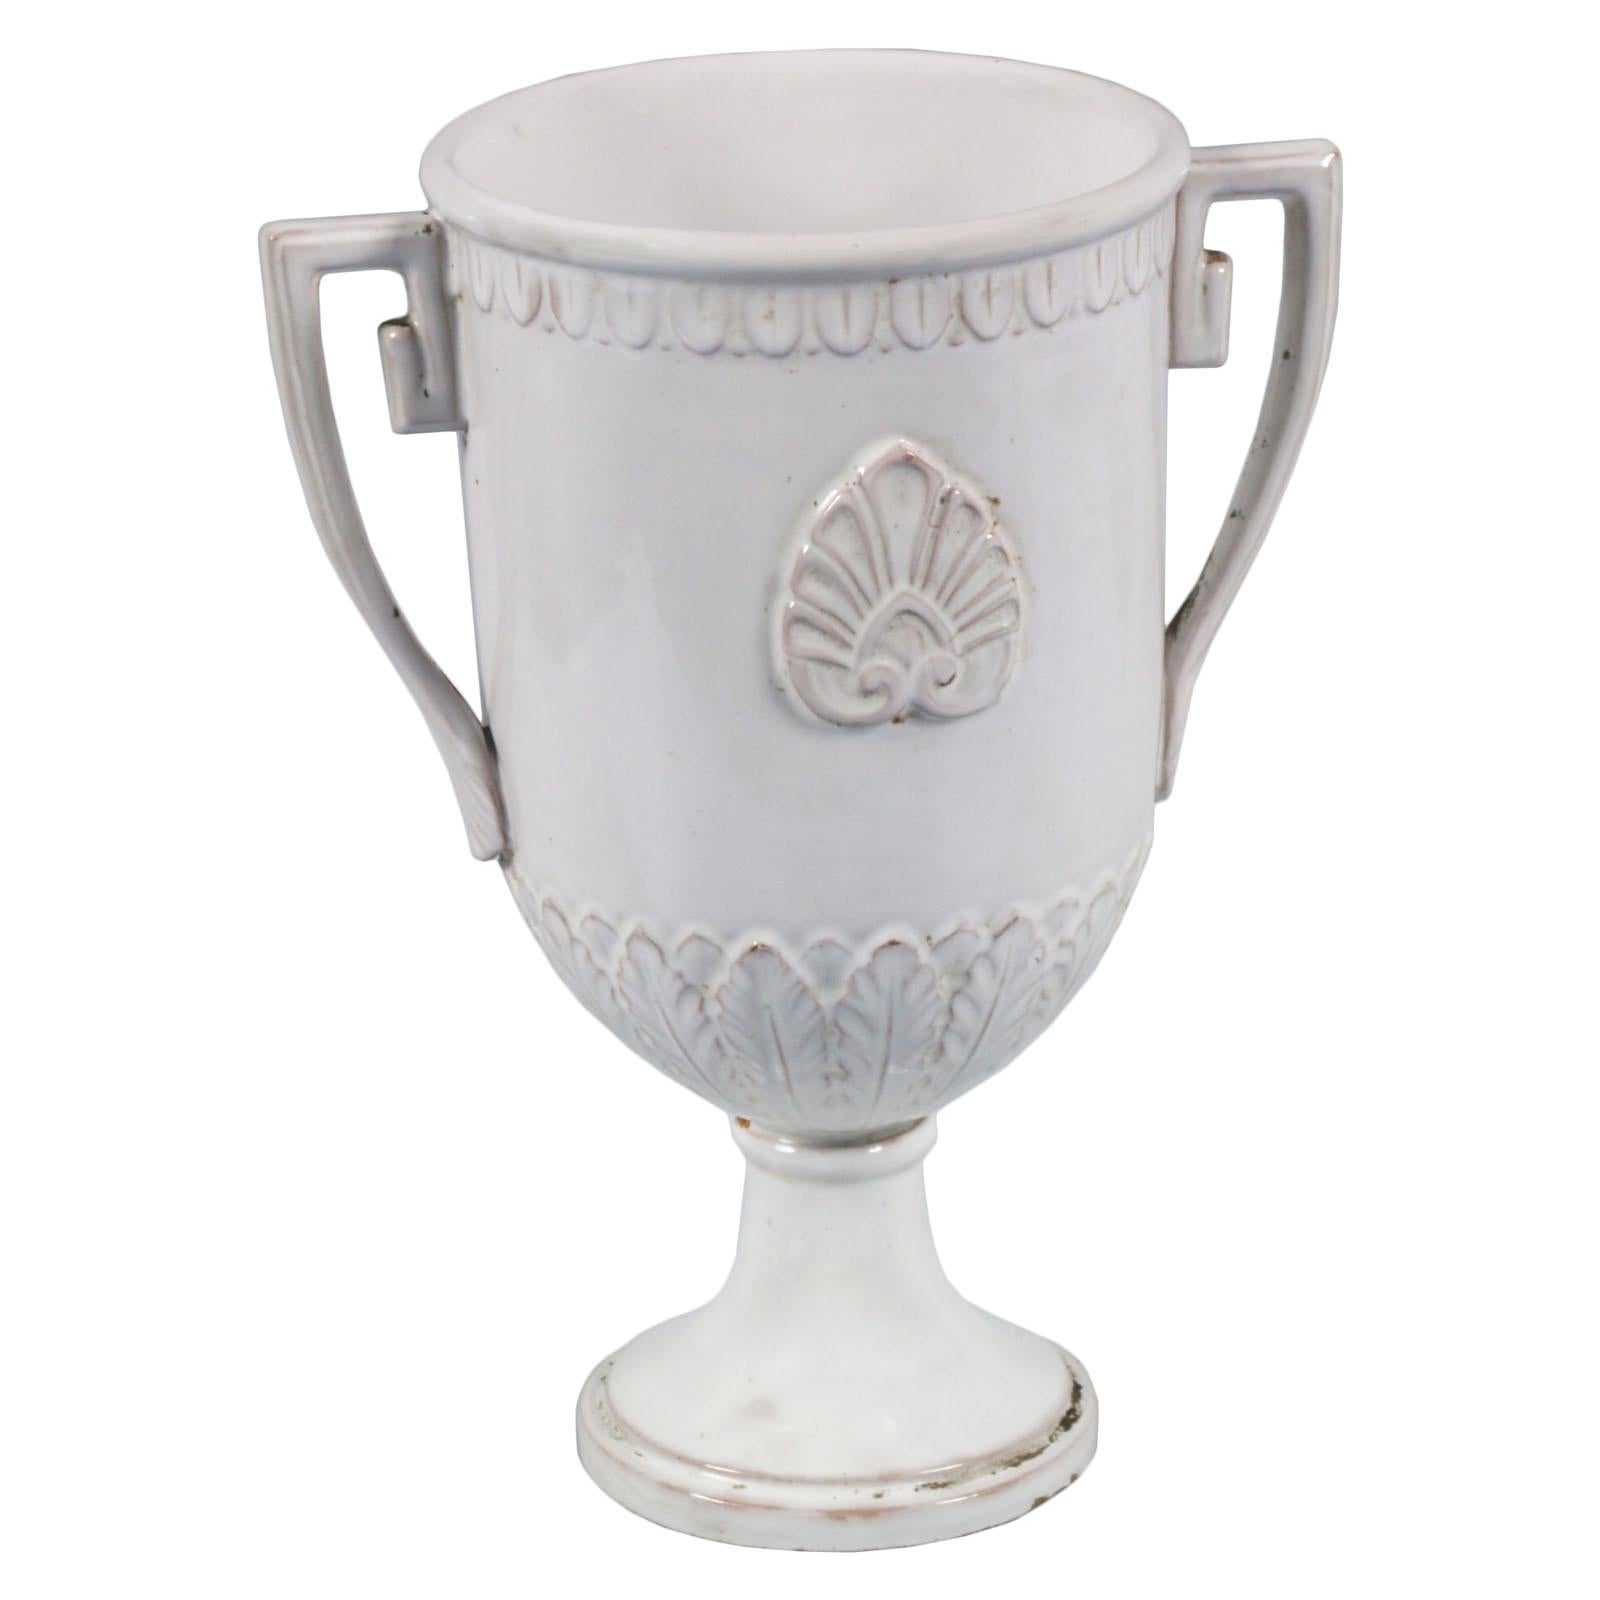 Griechisch-klassische emaillierte Terrakotta-Vase von Ceramiche di Este, um 1780-1820, zugeschrieben ex Manifattura Franchini

Über Ceramica di Este
Das Porzellan von Este ist ein Porzellan, das zwischen 1765 und dem späten 18. Jahrhundert in